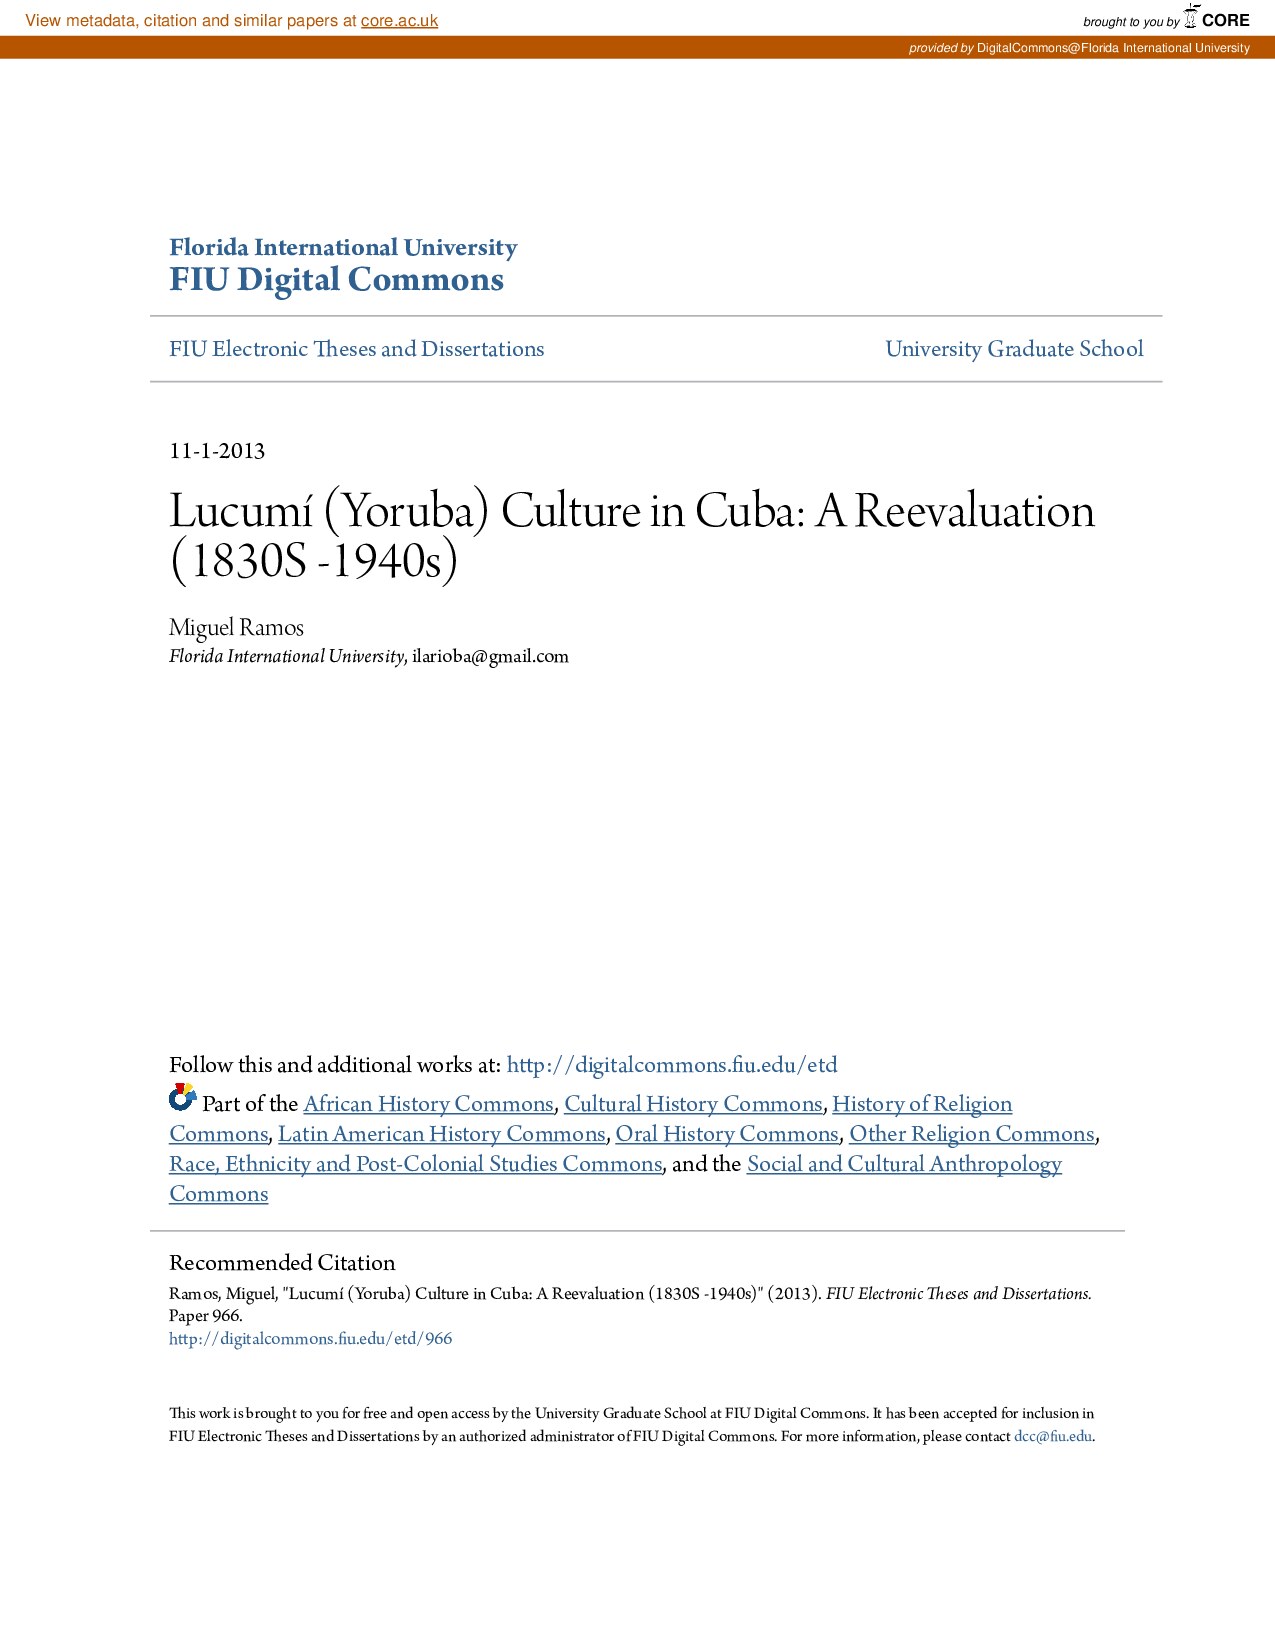 Lucumí (Yoruba) Culture in Cuba: A Reevaluation (1830S -1940s)